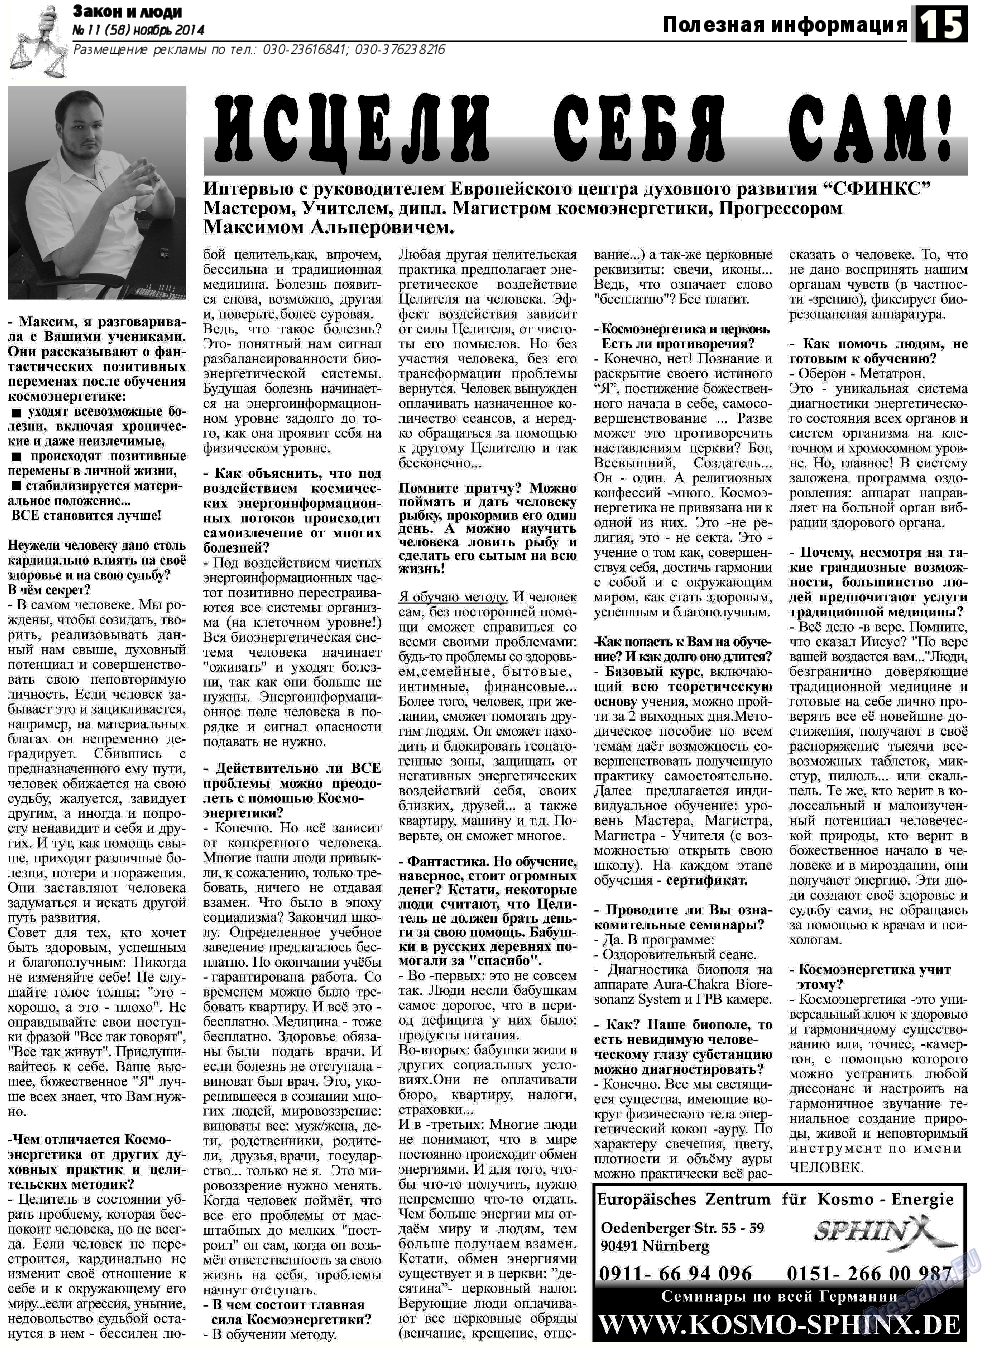 Закон и люди, газета. 2014 №11 стр.15